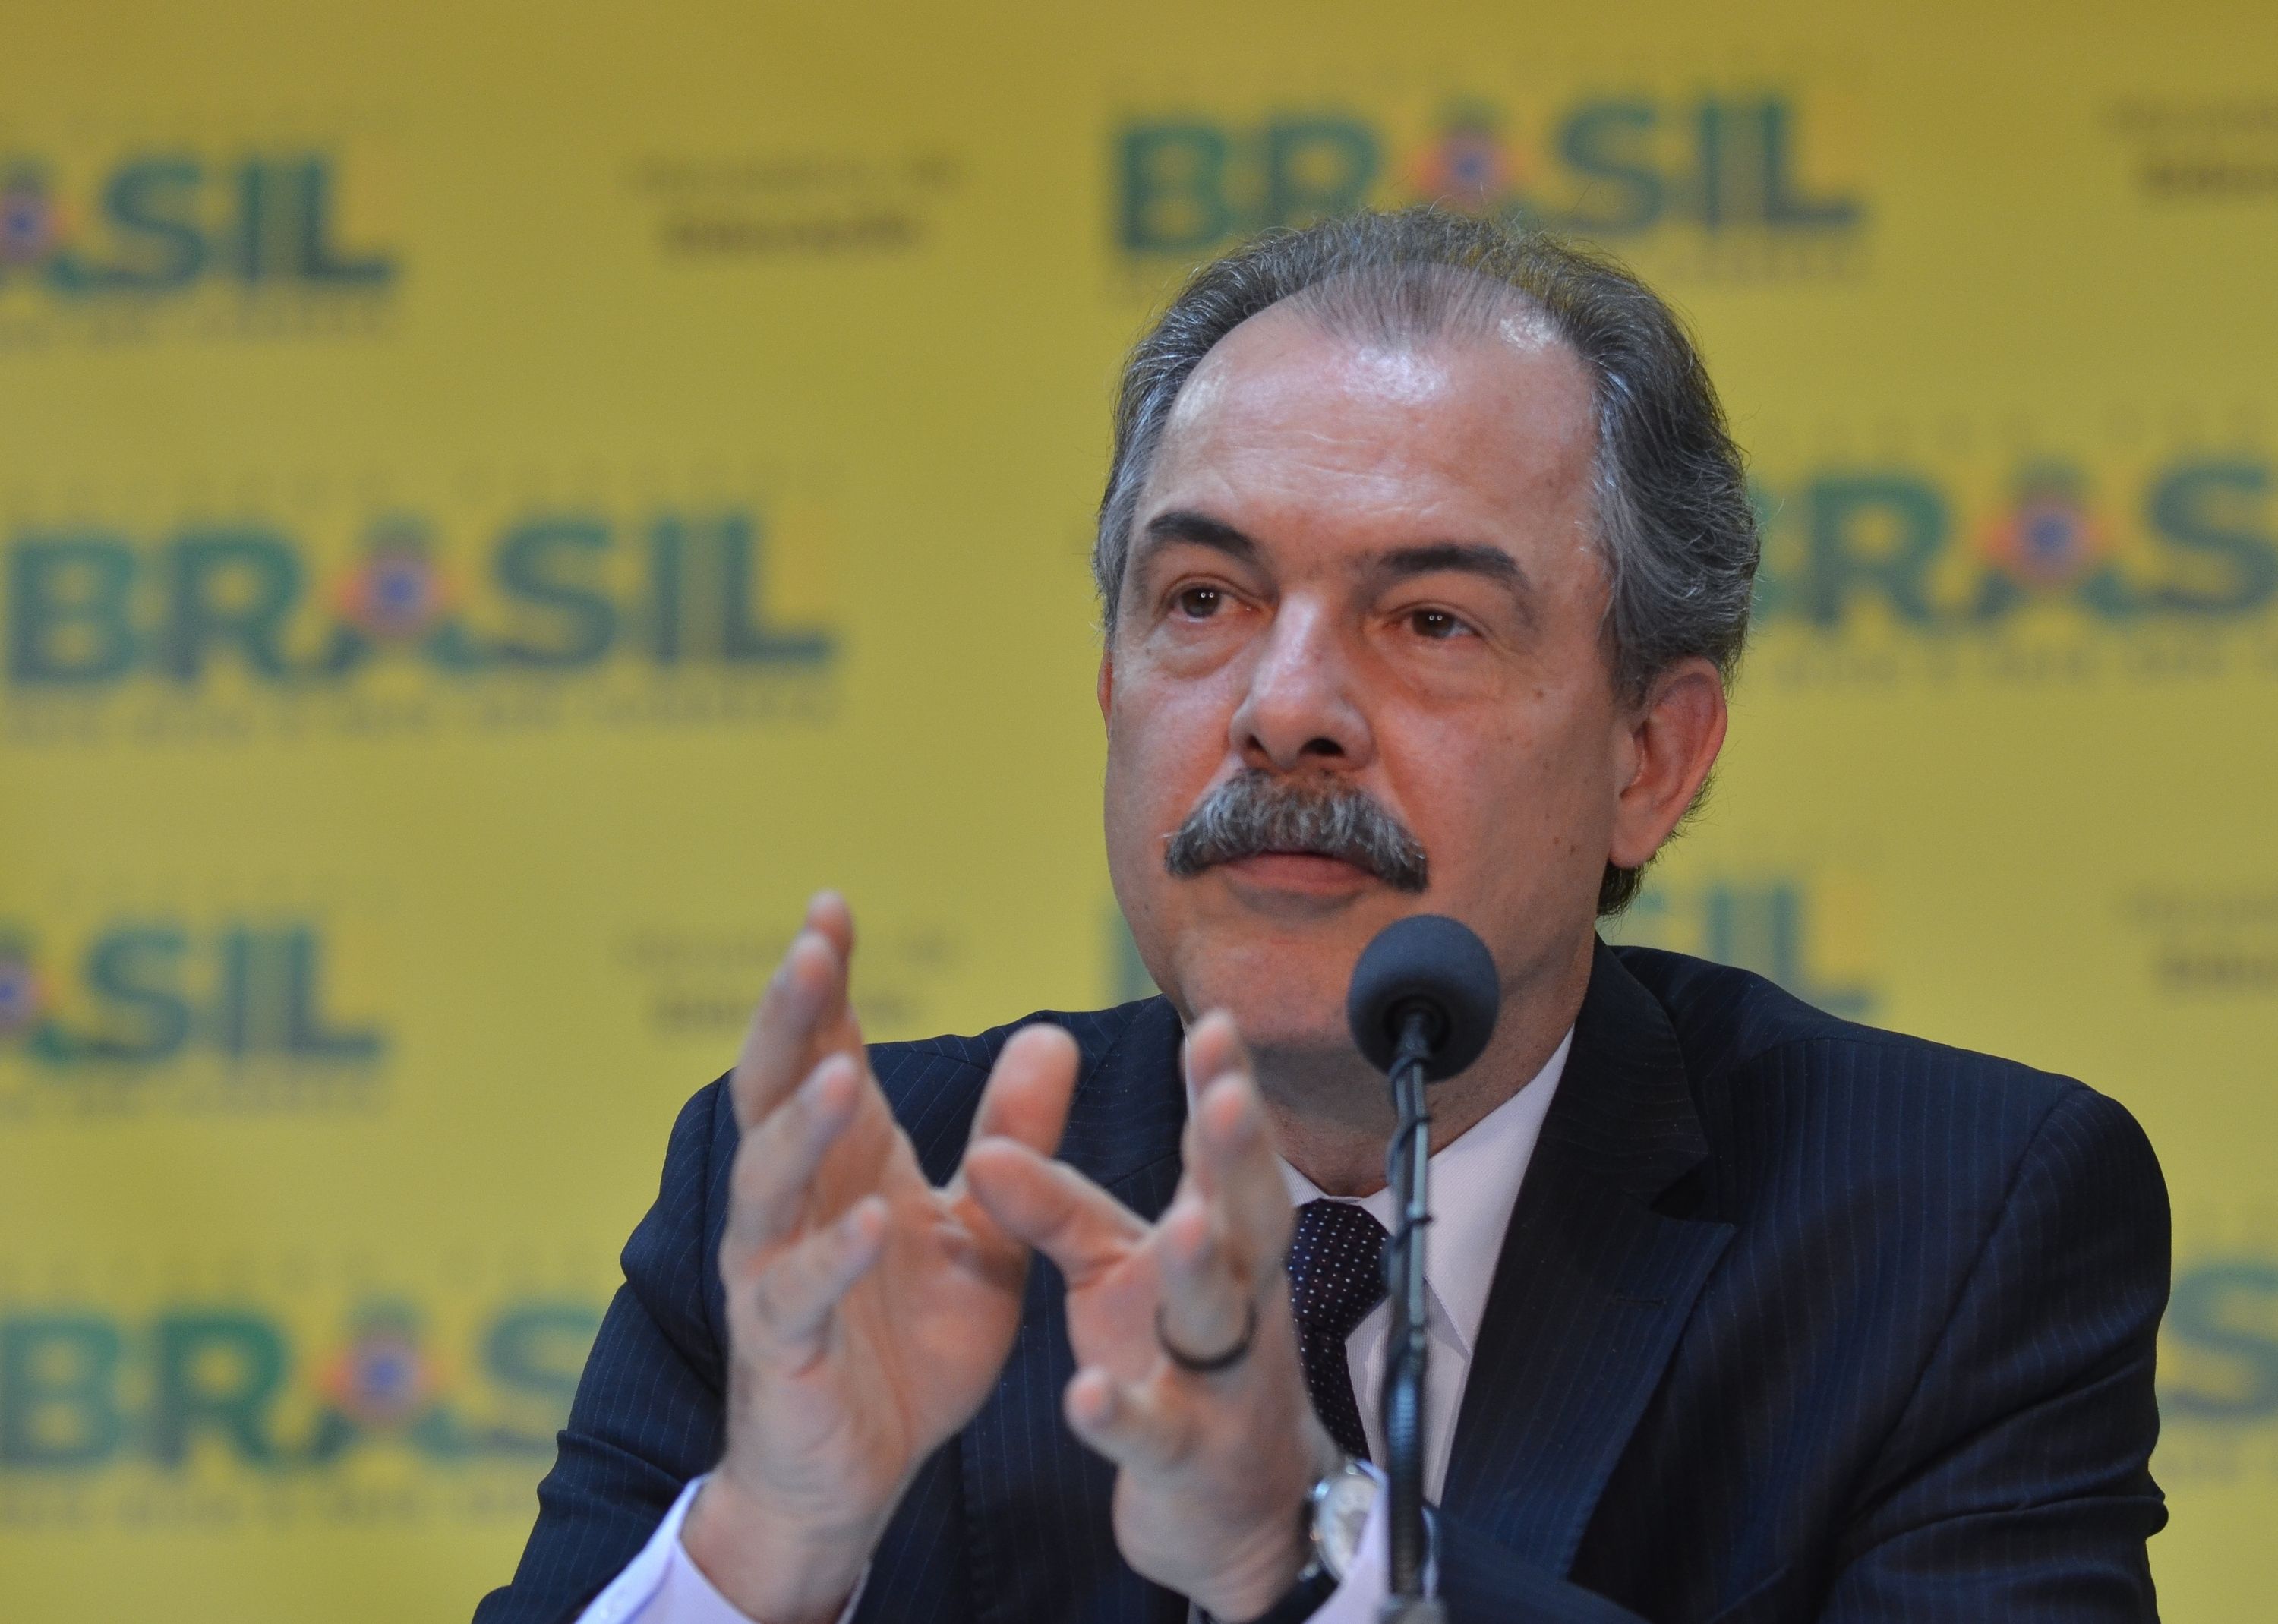 Aloízio Mercadante was the Minister of Education, Rio de Janeiro, Brazil News